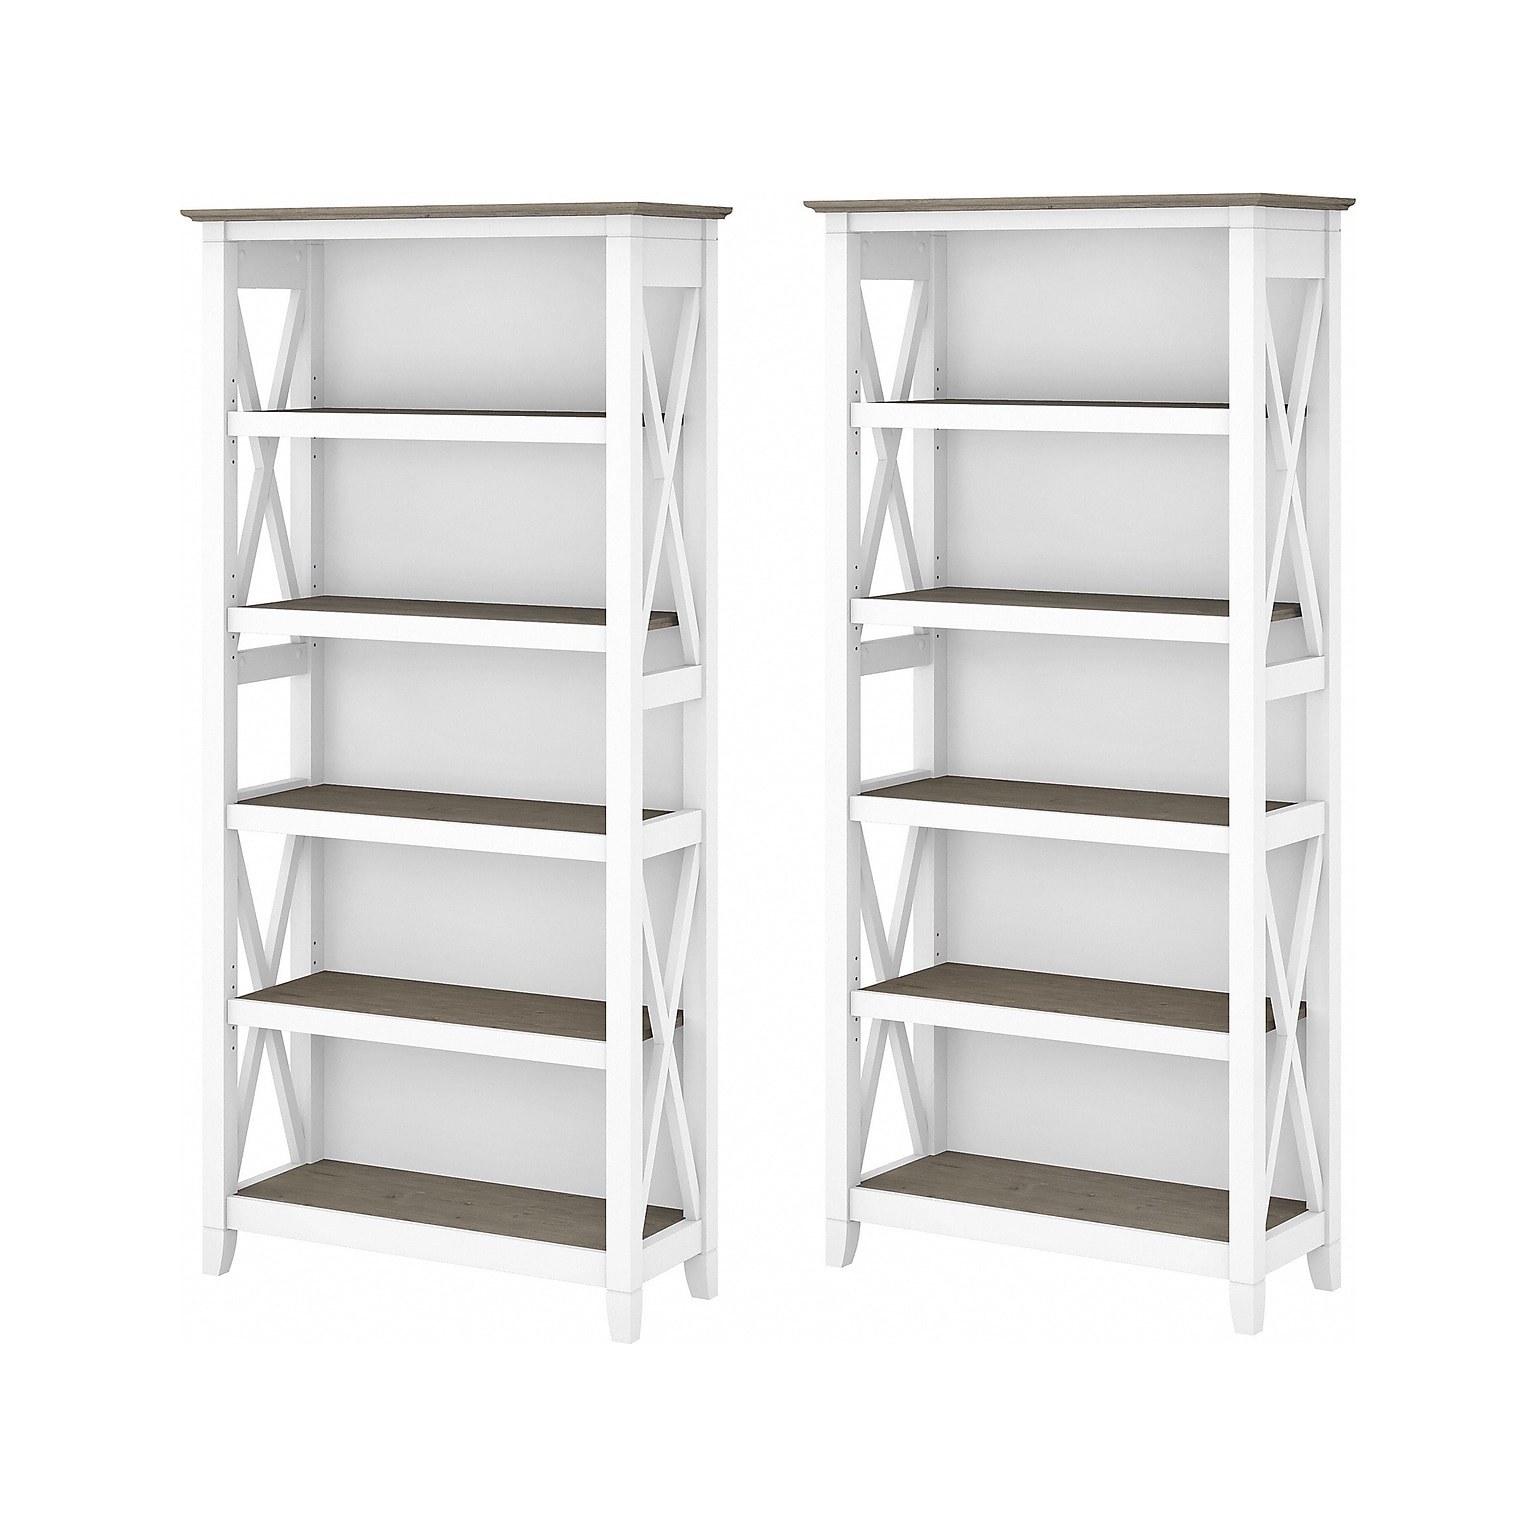 Bush Furniture Key West 66H 5-Shelf Bookcase with Adjustable Shelves, Shiplap Gray/Pure White Laminated Wood, 2/Set (KWS046G2W)